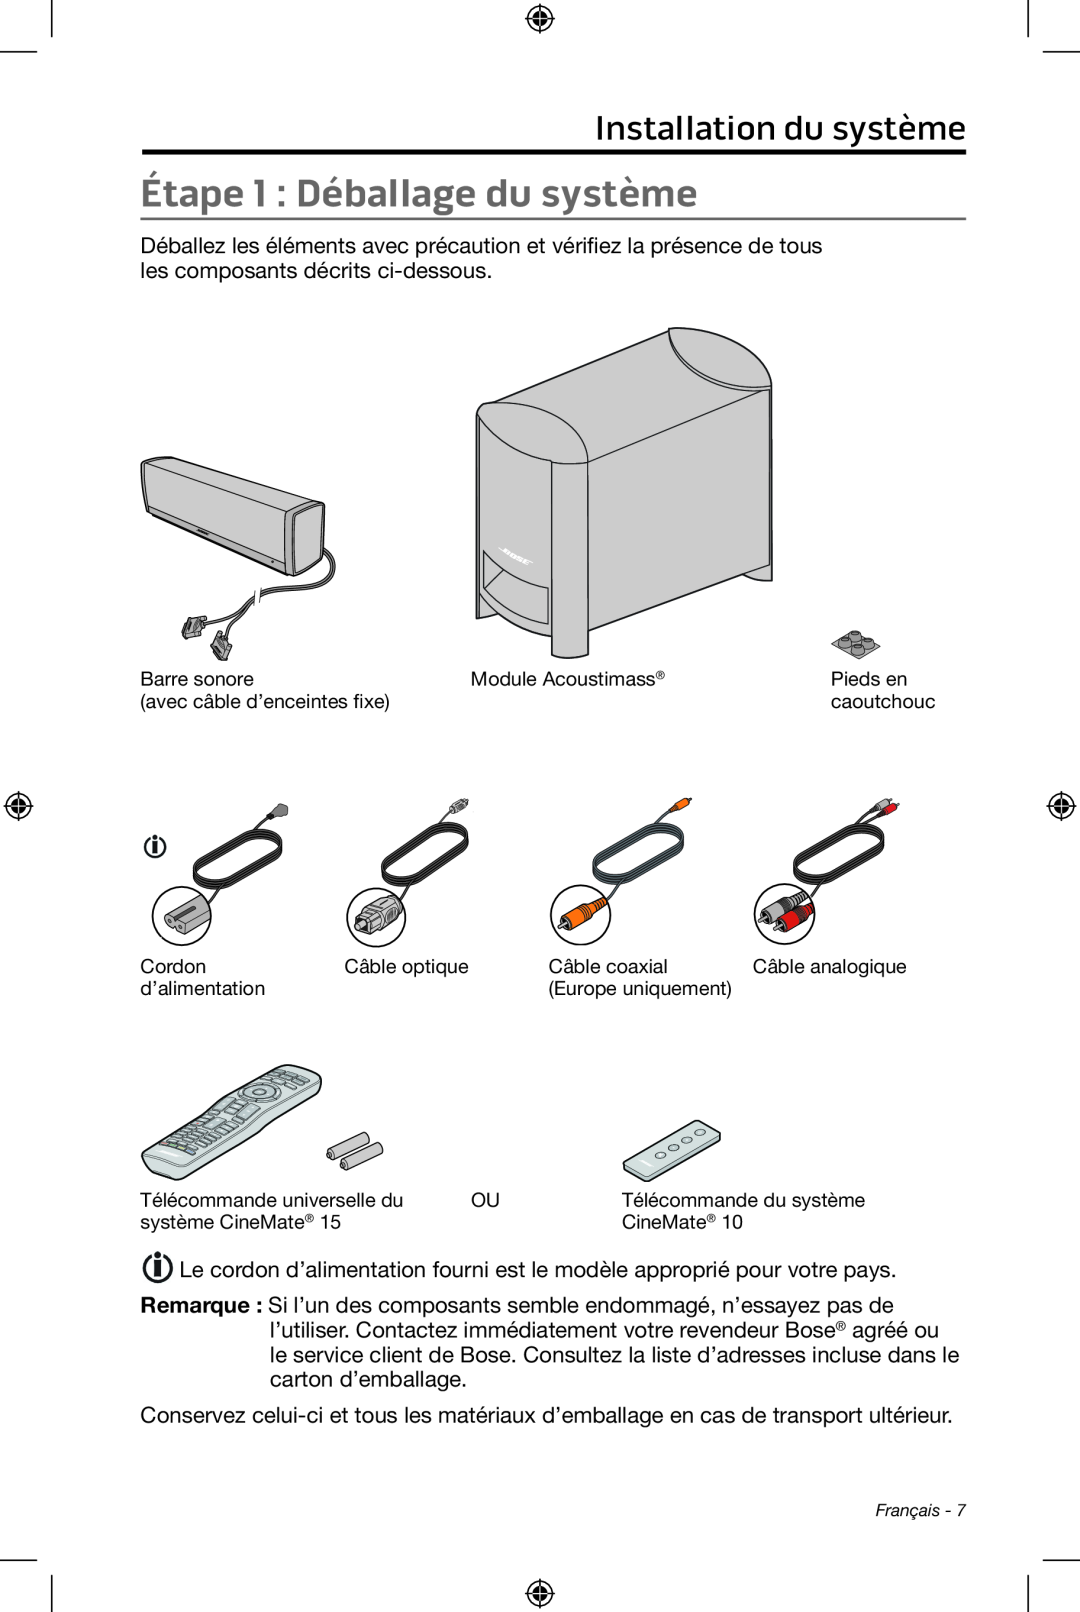 Bose CineMate 15/10 manual Étape 1 : Déballage du système, Installation du système 